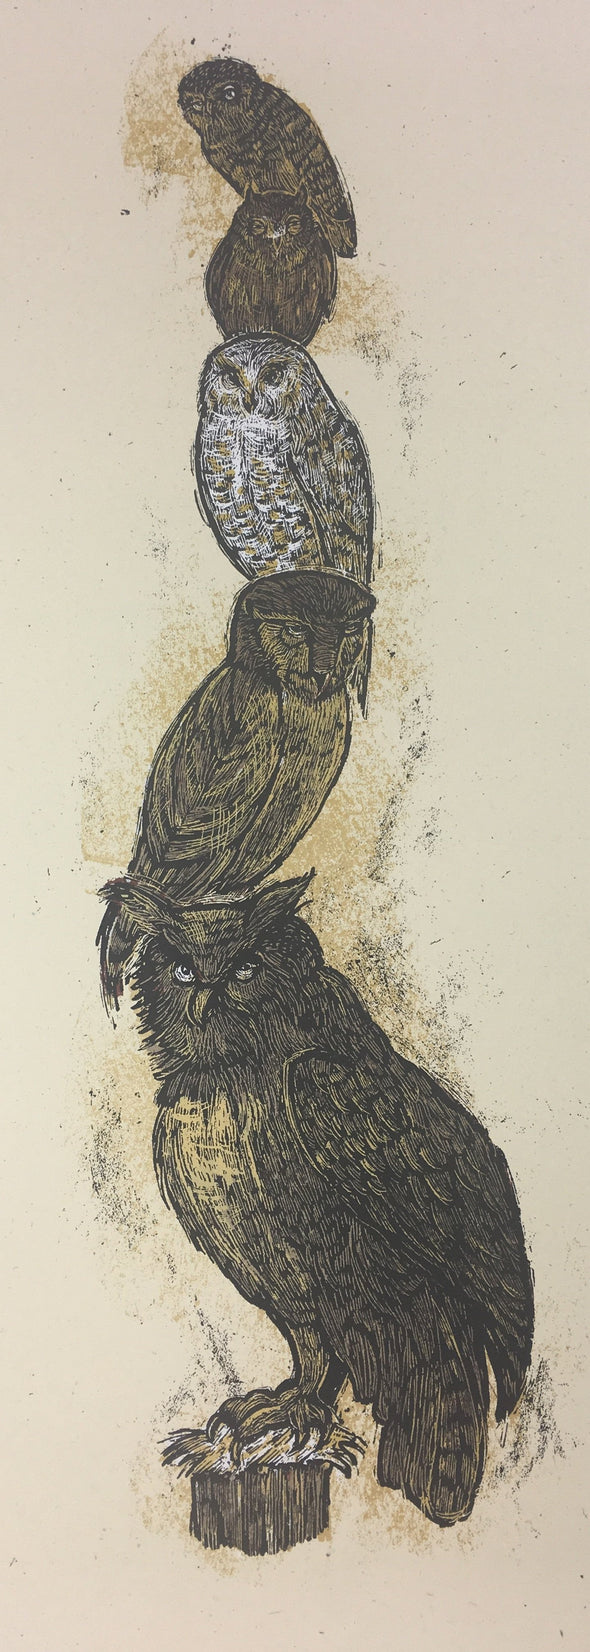 5 Owl Totem - 2010 Dan Grzeca Poster Art Print